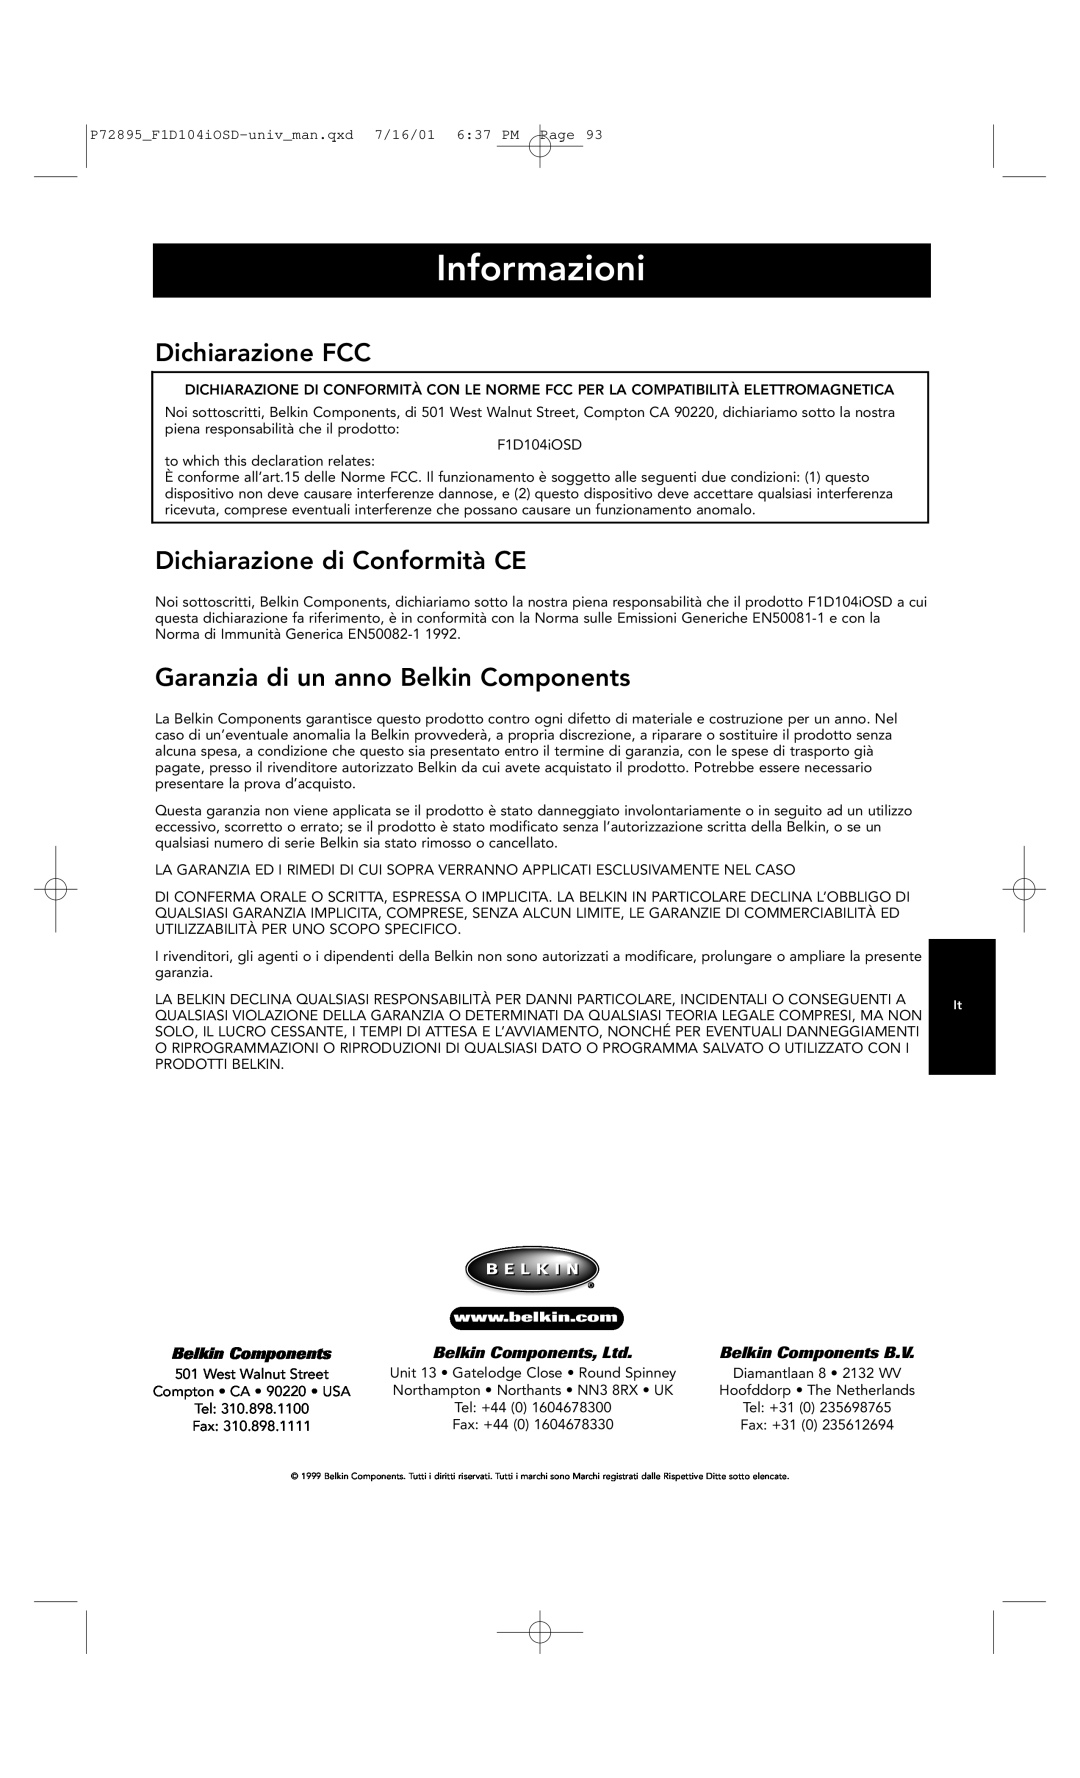 Belkin F1D104-OSD Informazioni, Dichiarazione FCC, Dichiarazione di Conformità CE, Garanzia di un anno Belkin Components 